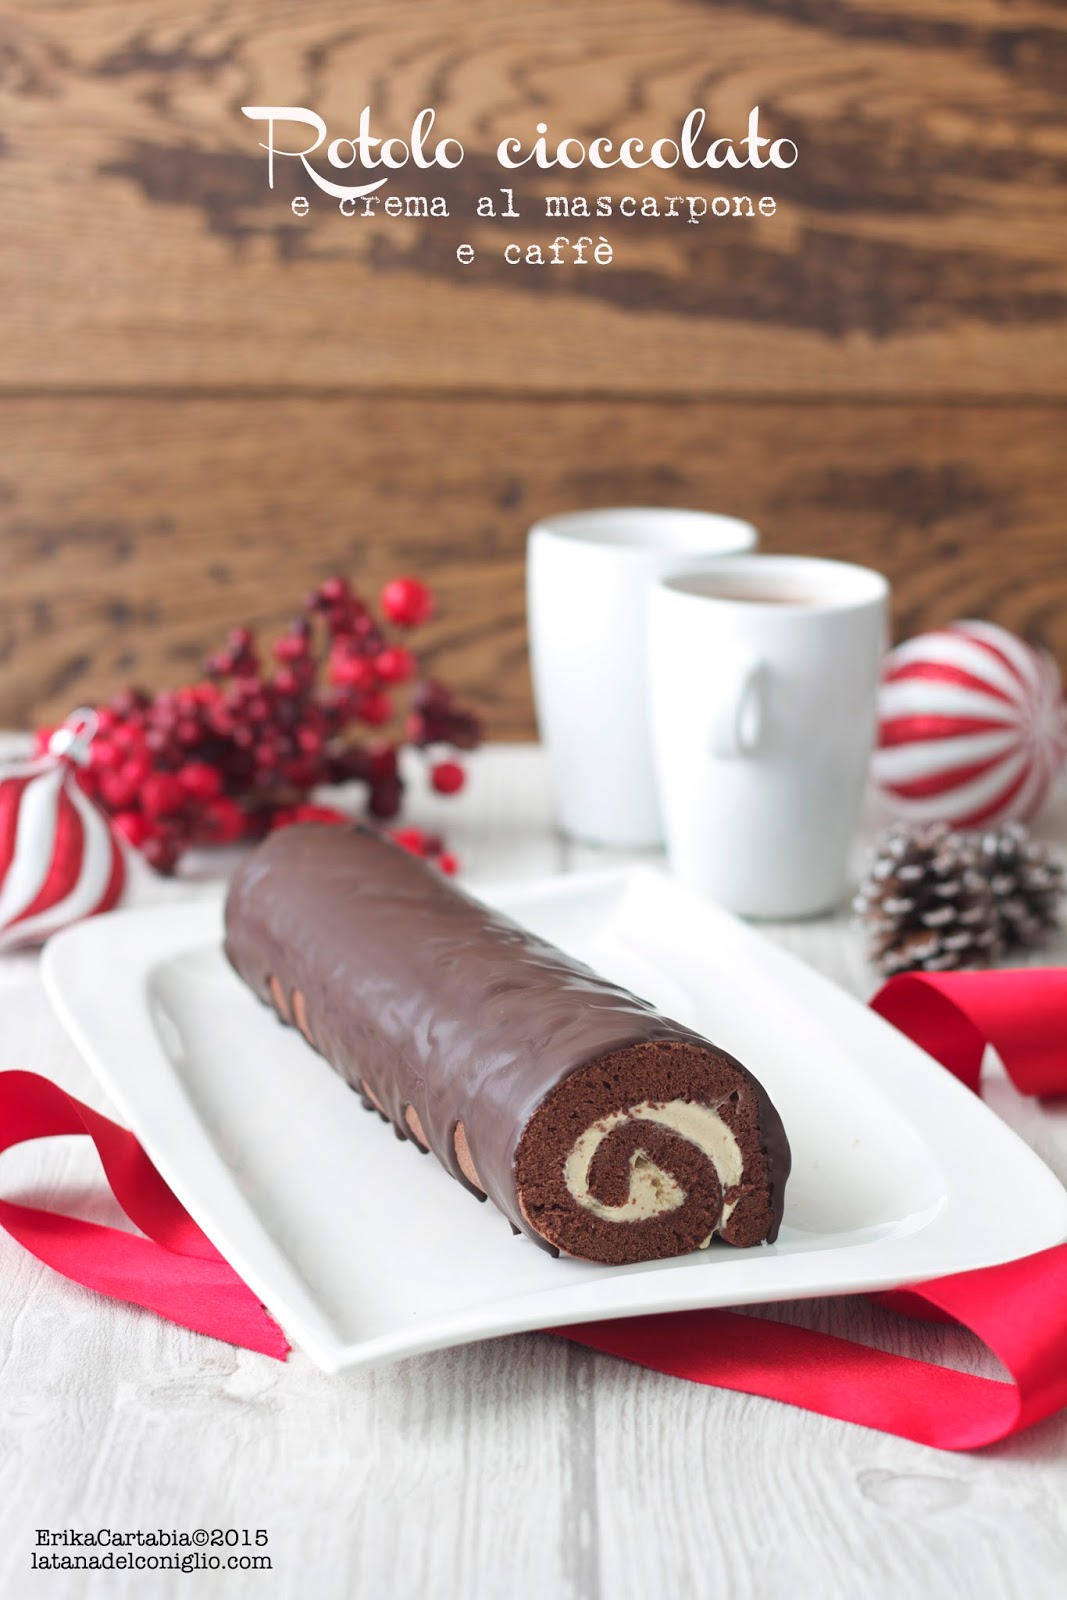 Tronchetto Di Natale Con Crema Al Mascarpone.Rotolo Cioccolato E Crema Al Mascarpone E Caffe La Tana Del Coniglio